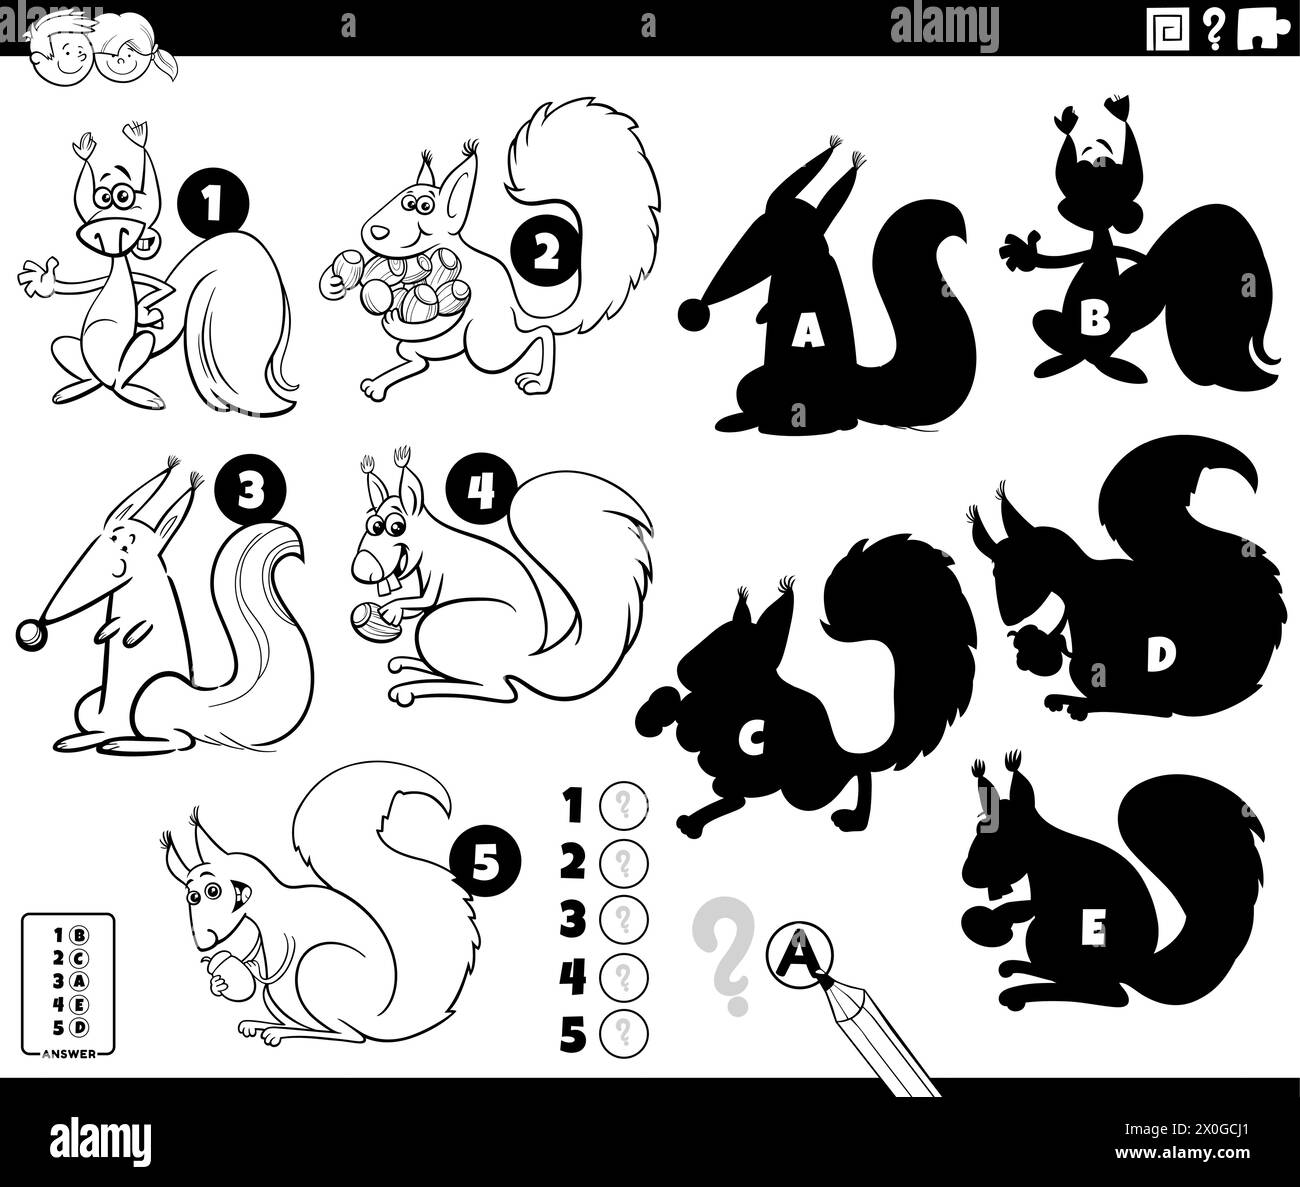 Illustration de dessin animé de trouver les ombres droites aux images jeu éducatif avec écureuils animaux personnages coloriage page Illustration de Vecteur